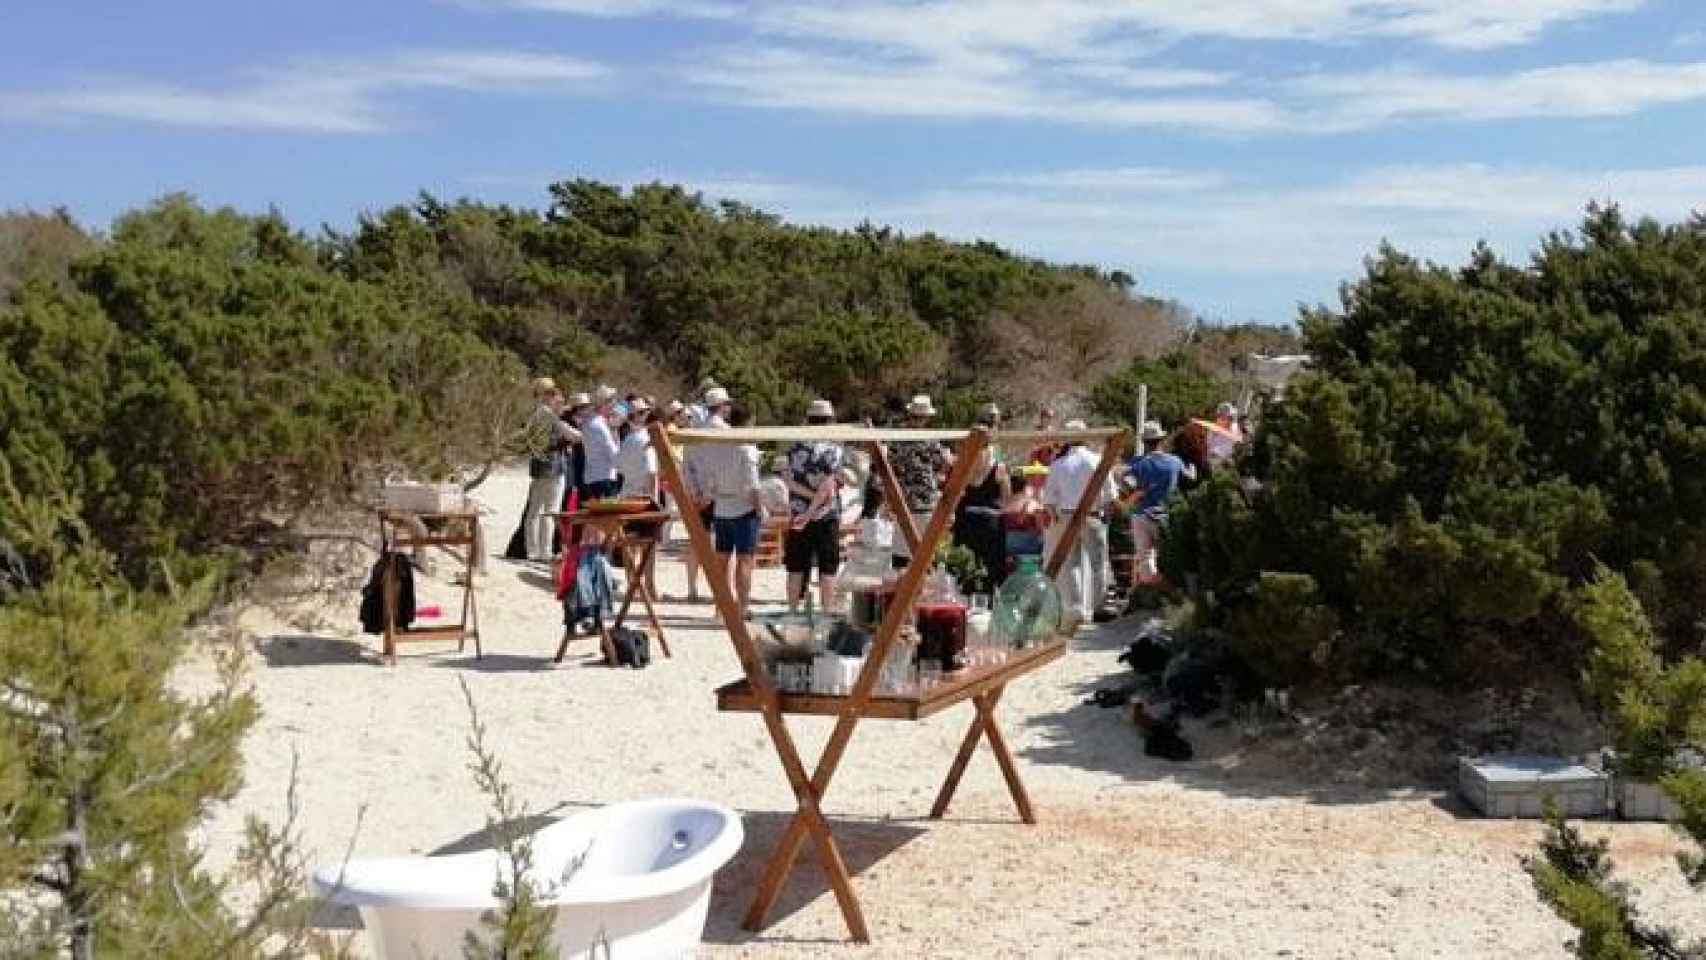 Agentes rurales paralizan una boda en una playa virgen de Mallorca / CONSELLERIA DE MEDIAMBIENT DE BALEARS